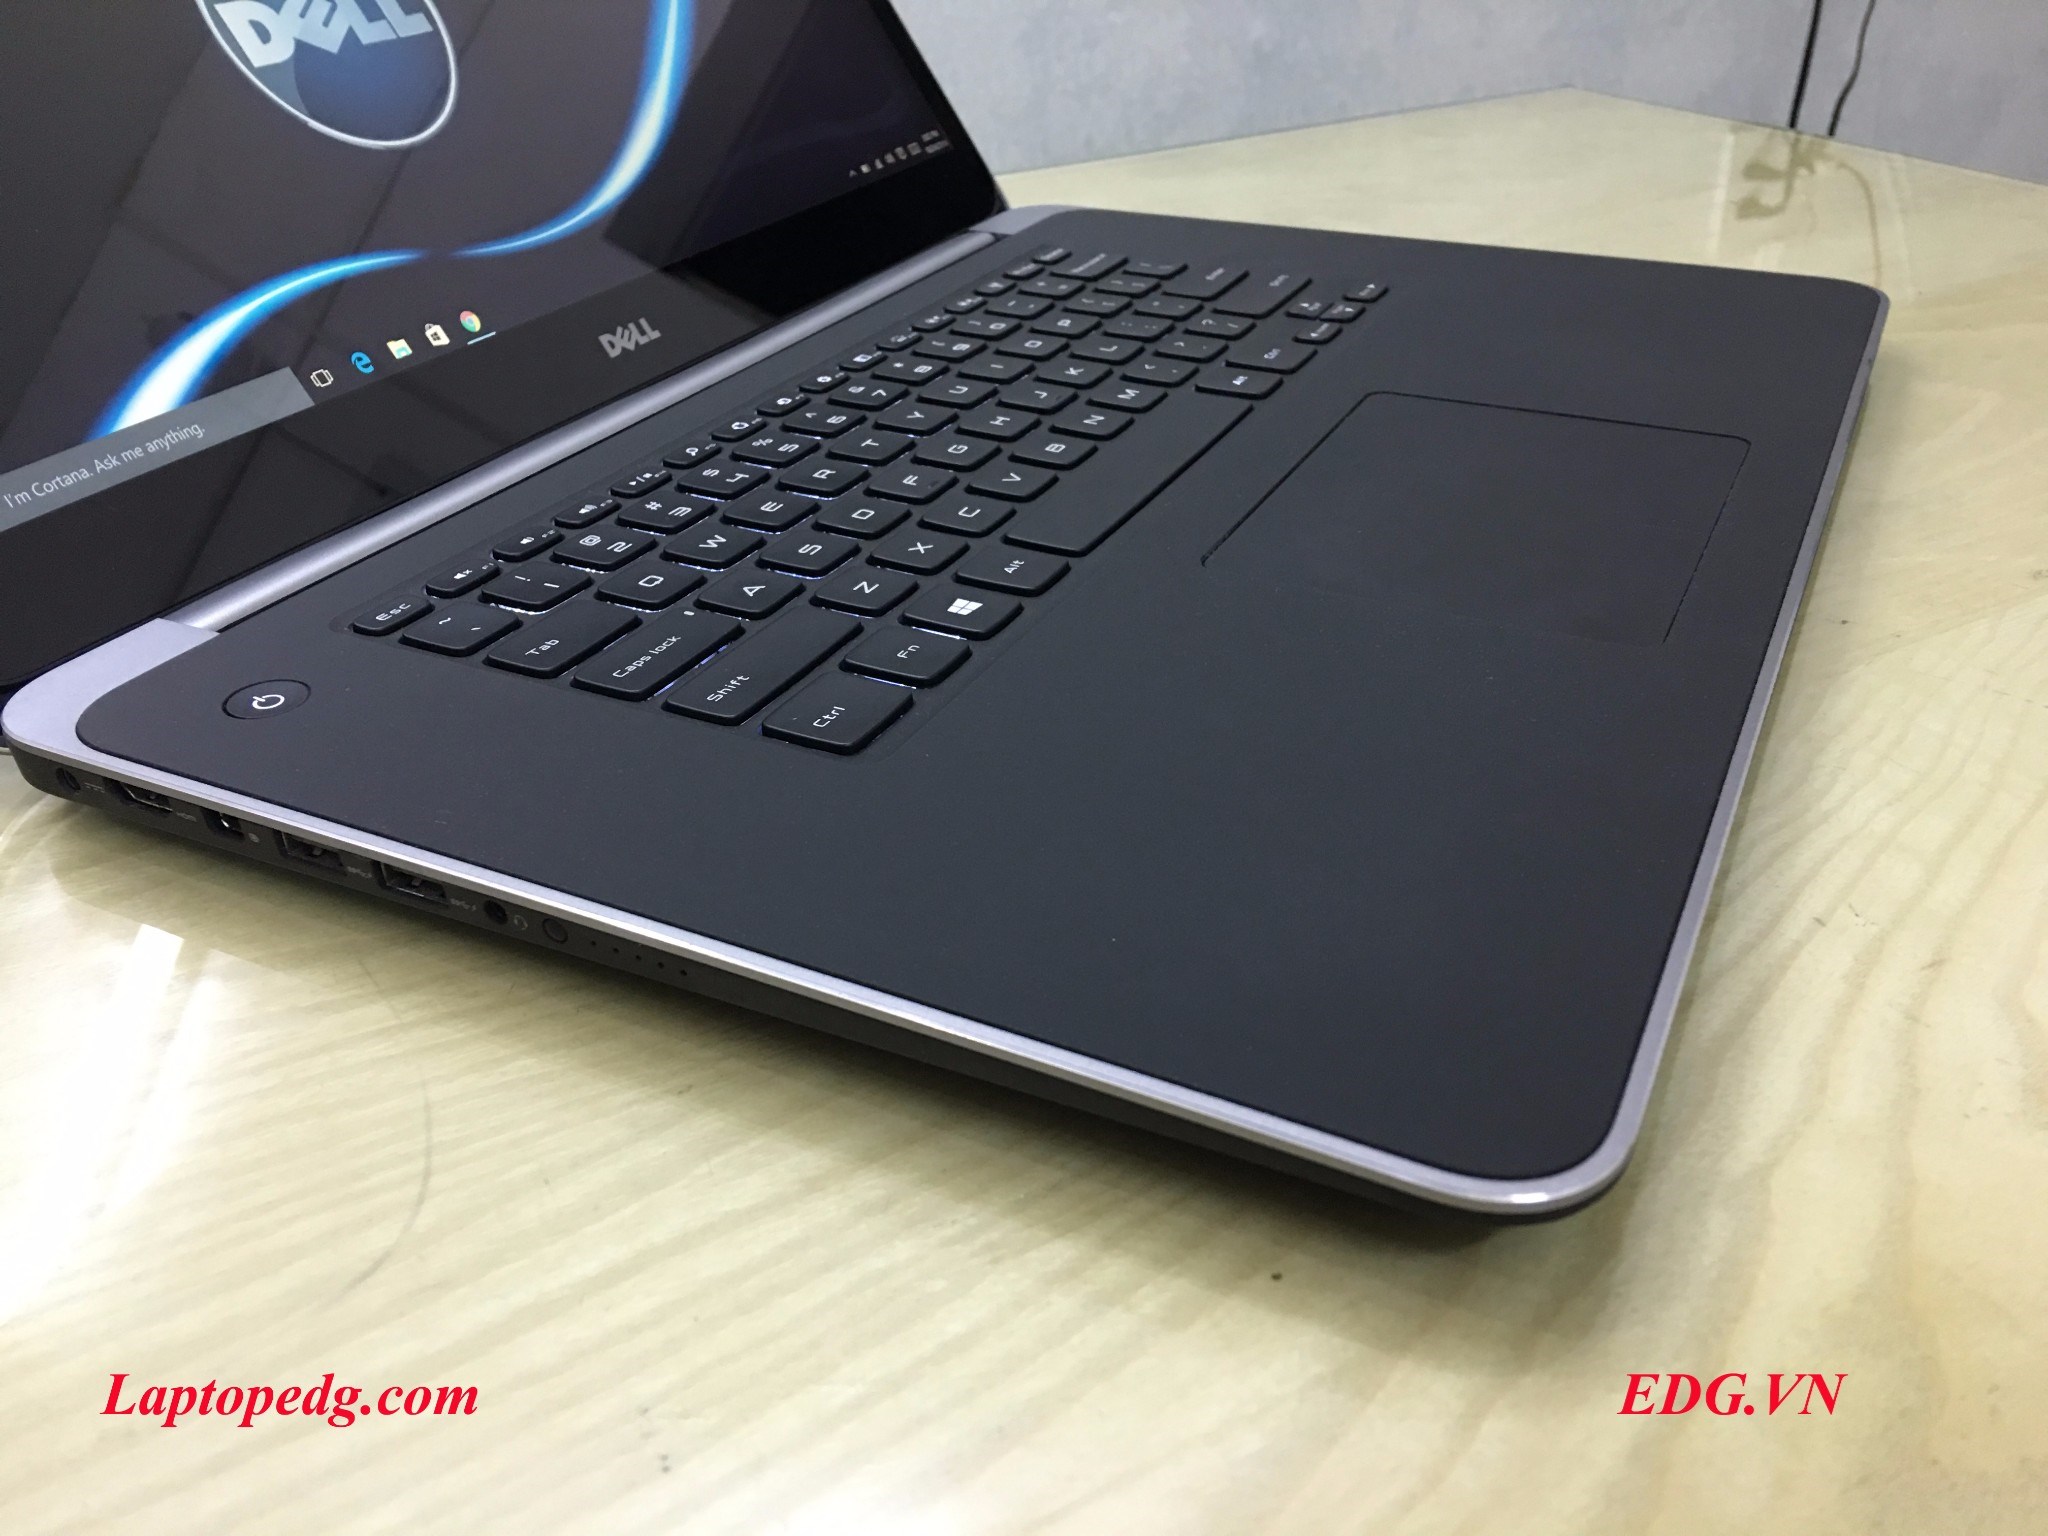 Đánh giá laptop Dell M3800 i7 màn hình cảm ứng 3K